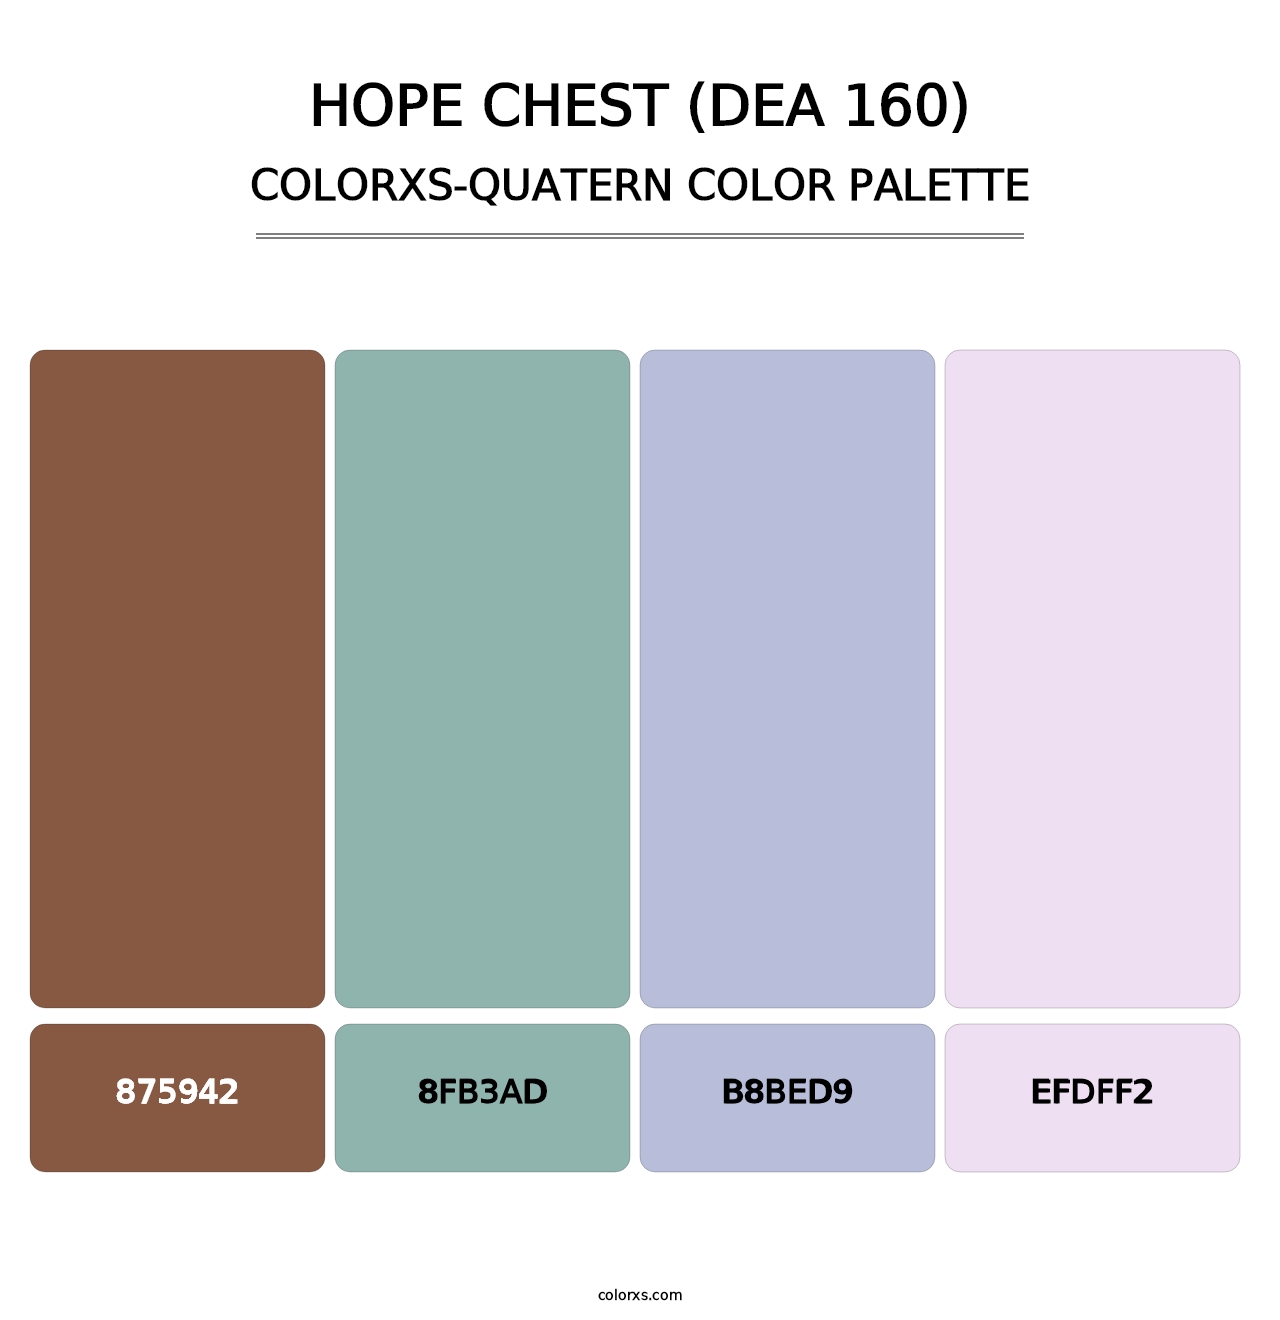 Hope Chest (DEA 160) - Colorxs Quatern Palette